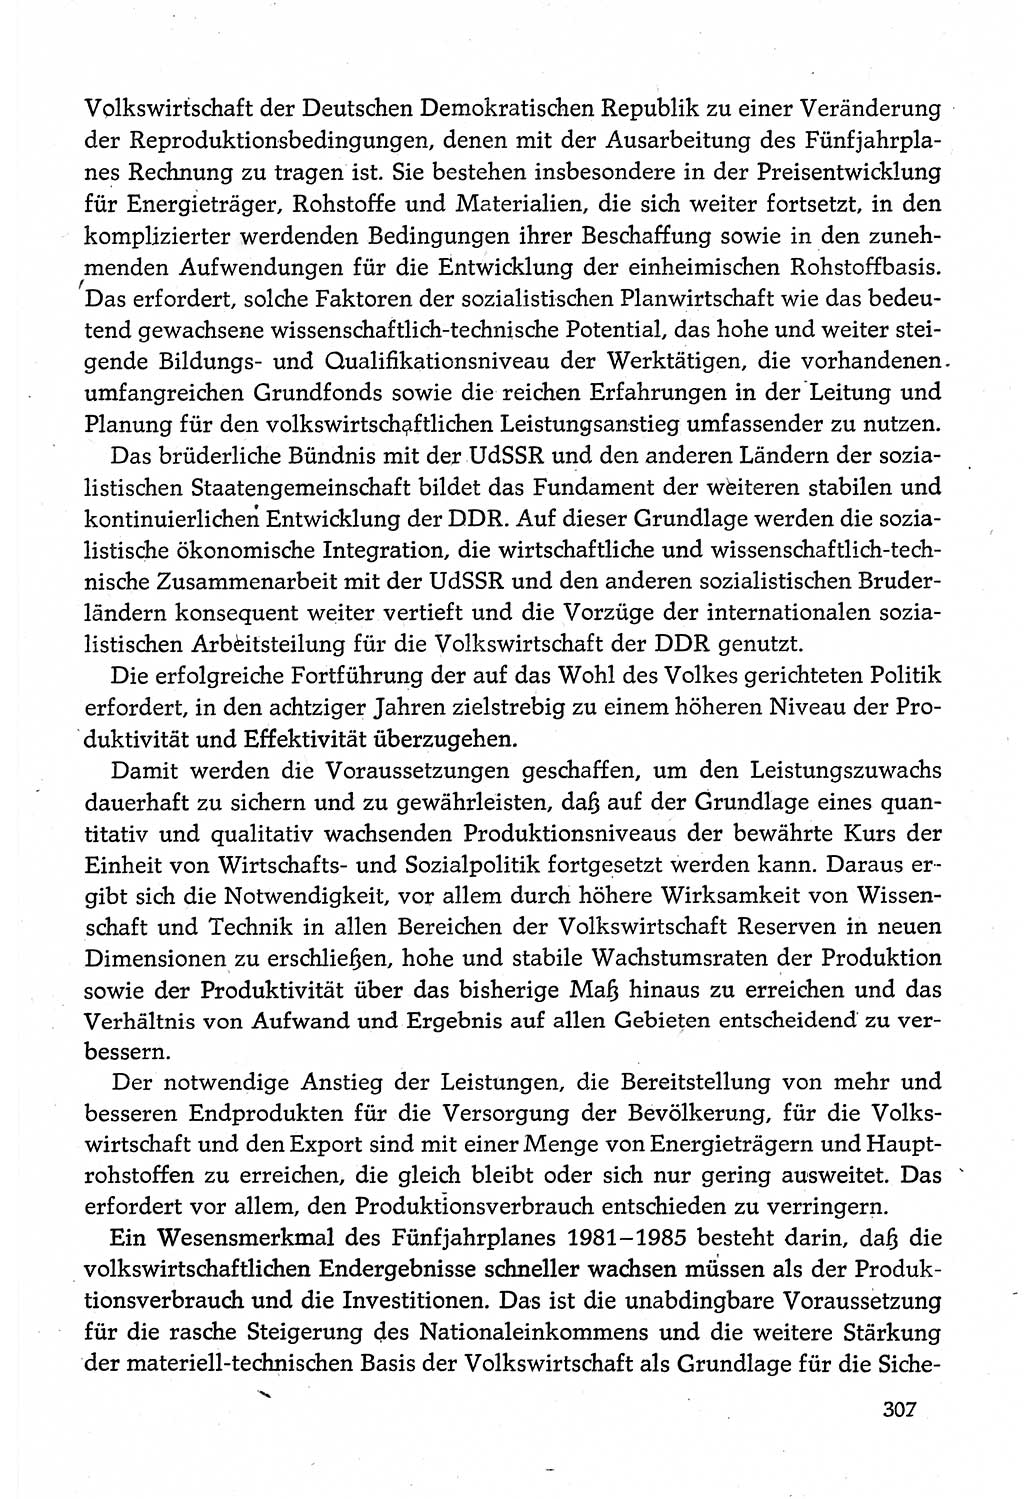 Dokumente der Sozialistischen Einheitspartei Deutschlands (SED) [Deutsche Demokratische Republik (DDR)] 1980-1981, Seite 307 (Dok. SED DDR 1980-1981, S. 307)